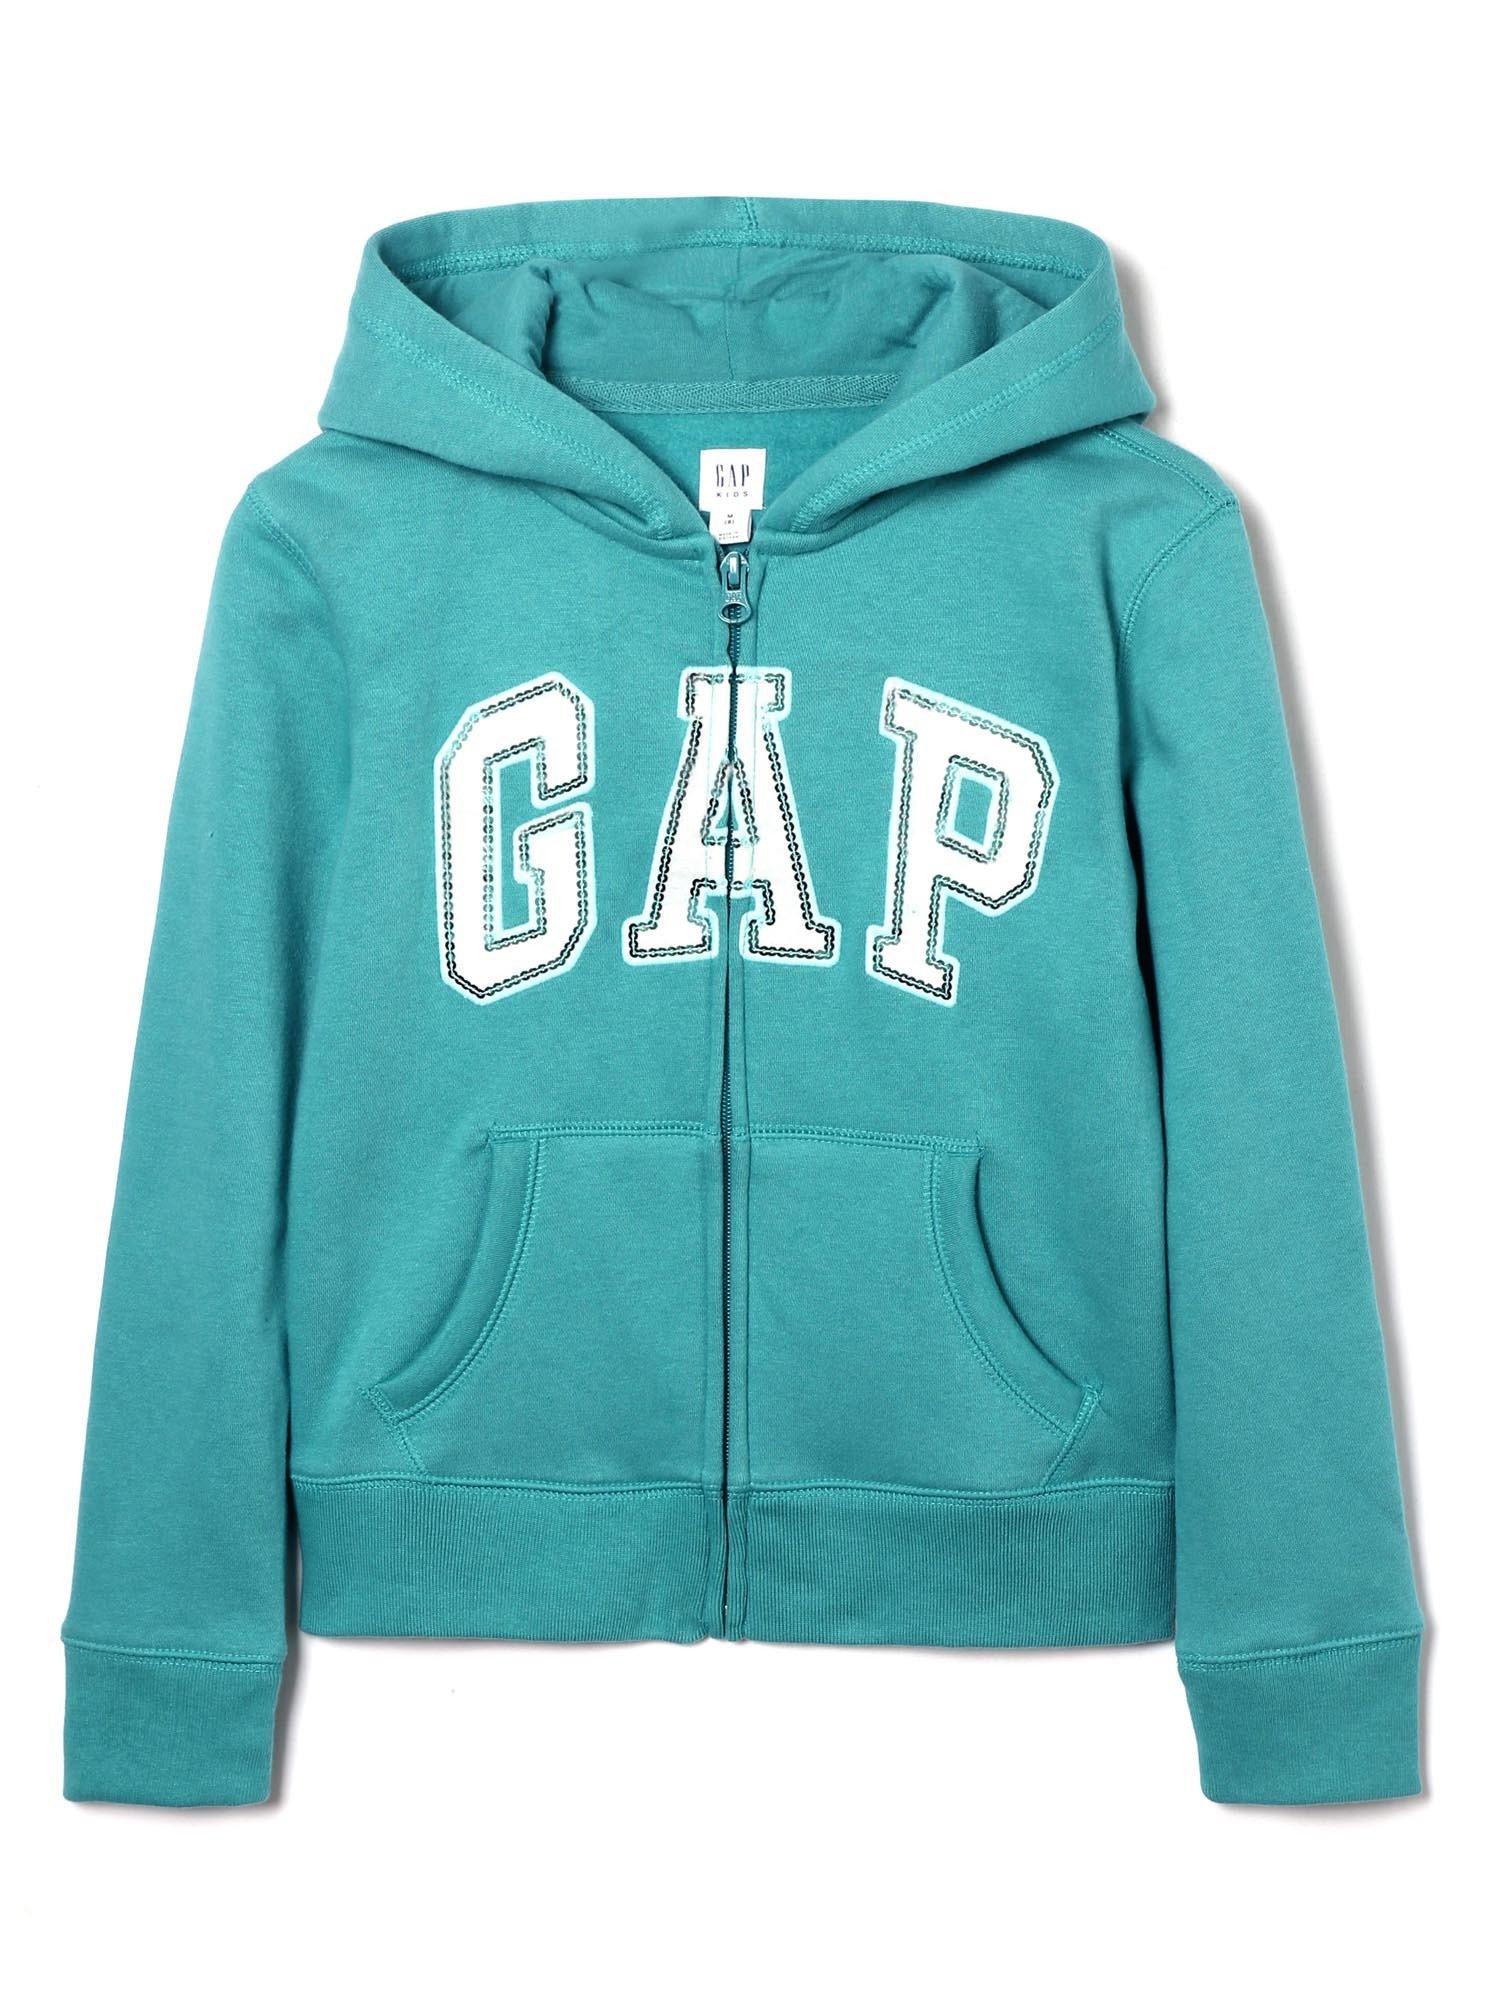 Pullu Gap Logo Kapüşonlu Sweatshirt product image